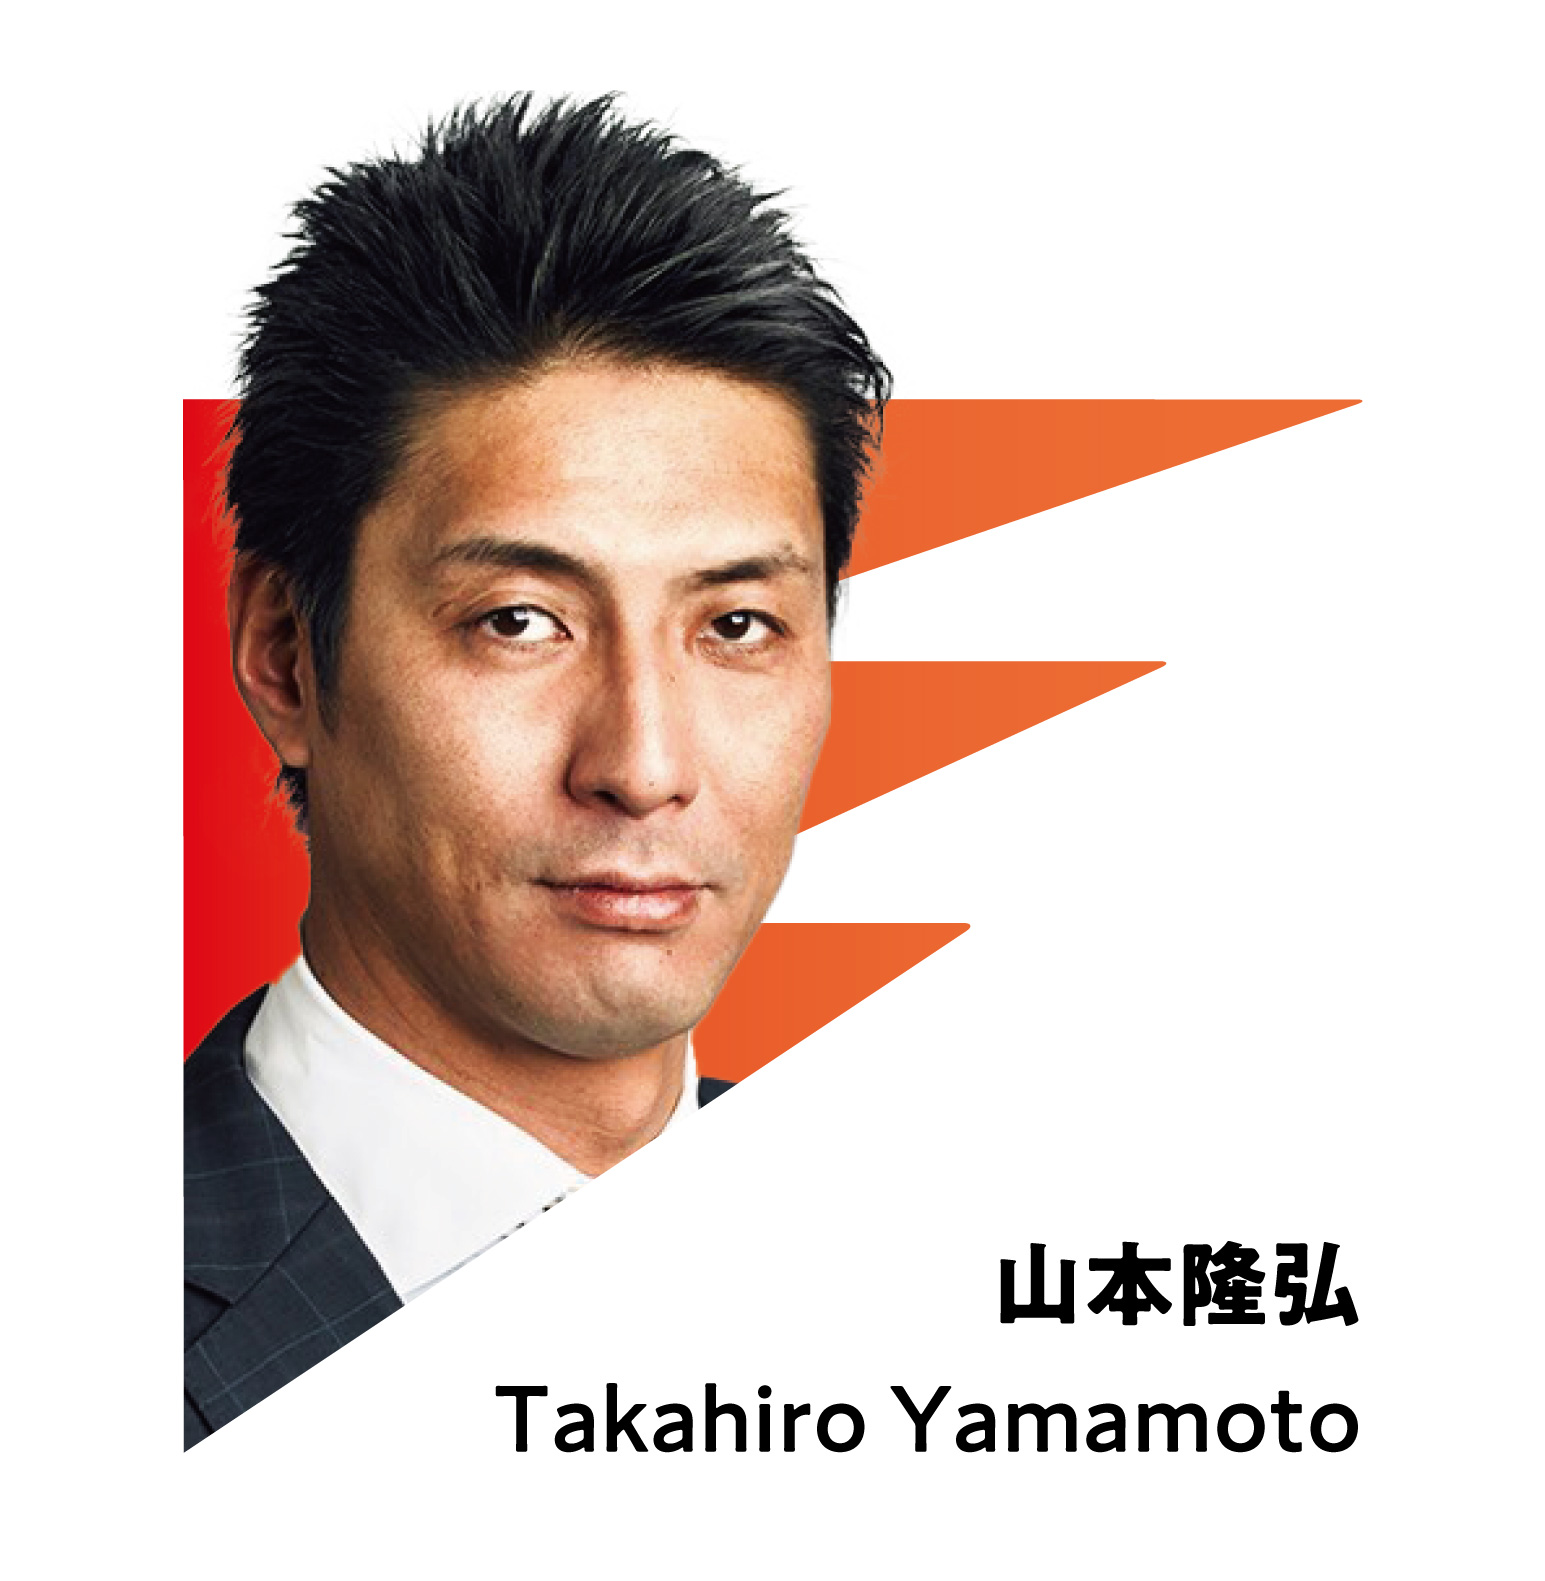 TAKAHIRO YAMAMOTO